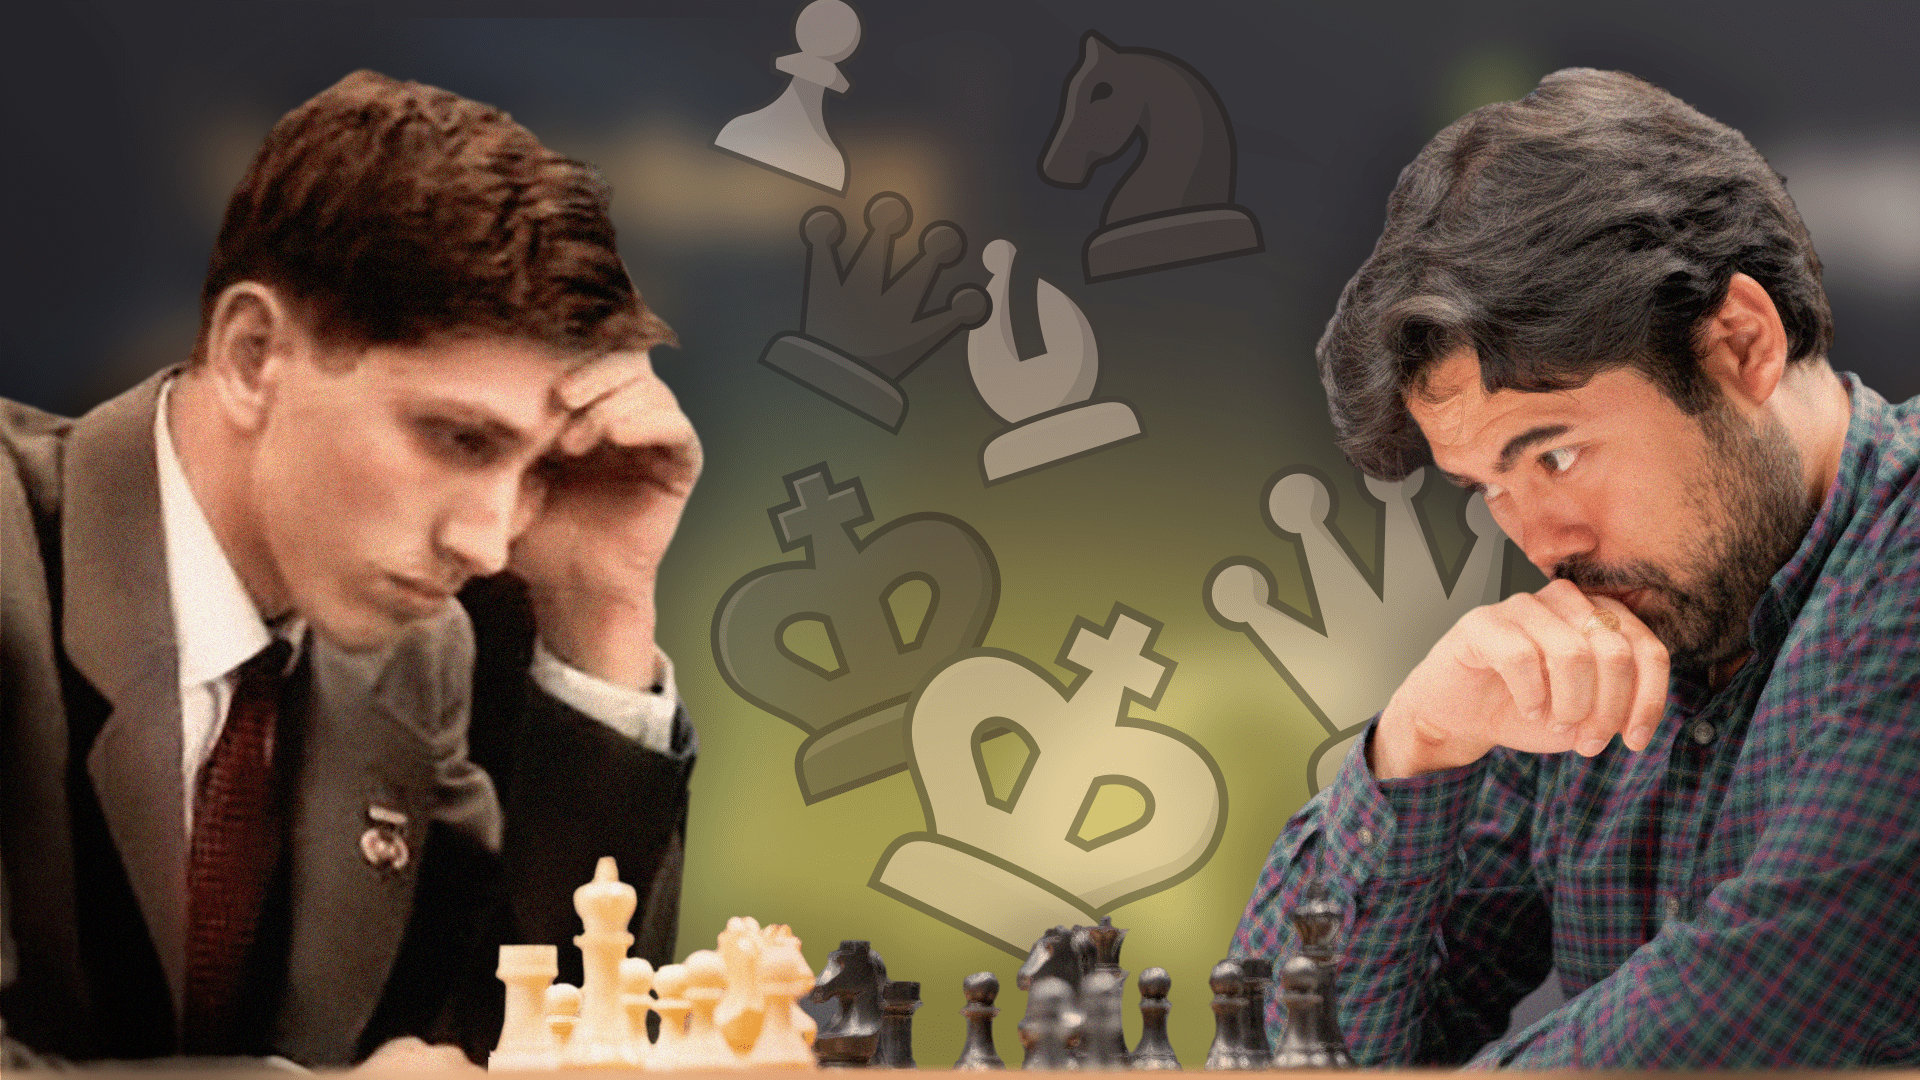 Morphy vs. Fischer « ChessManiac